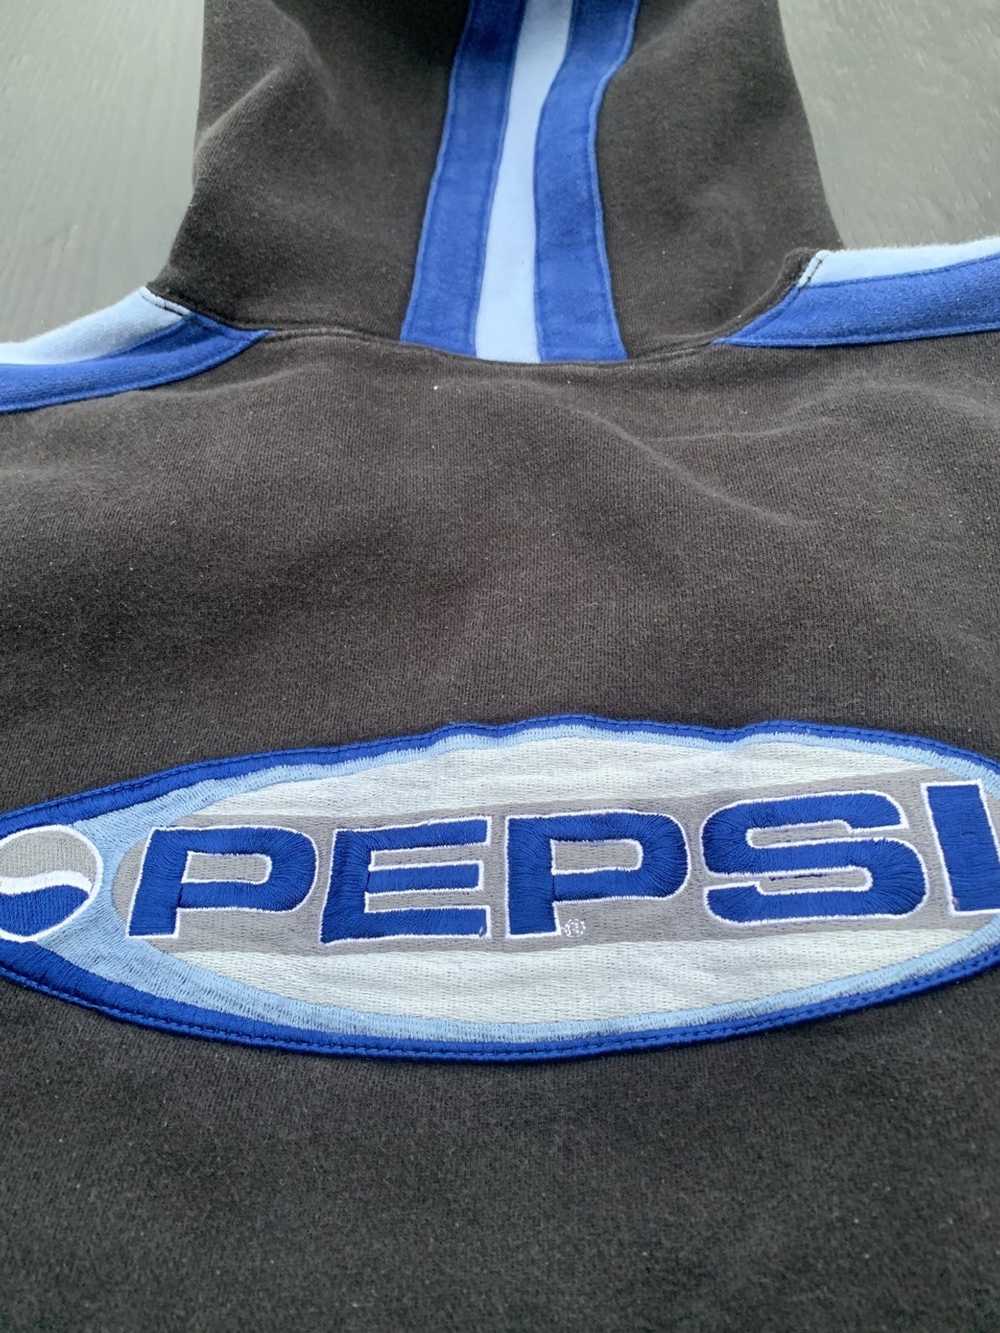 Pepsi Vintage Pepsi faded sweater - image 3